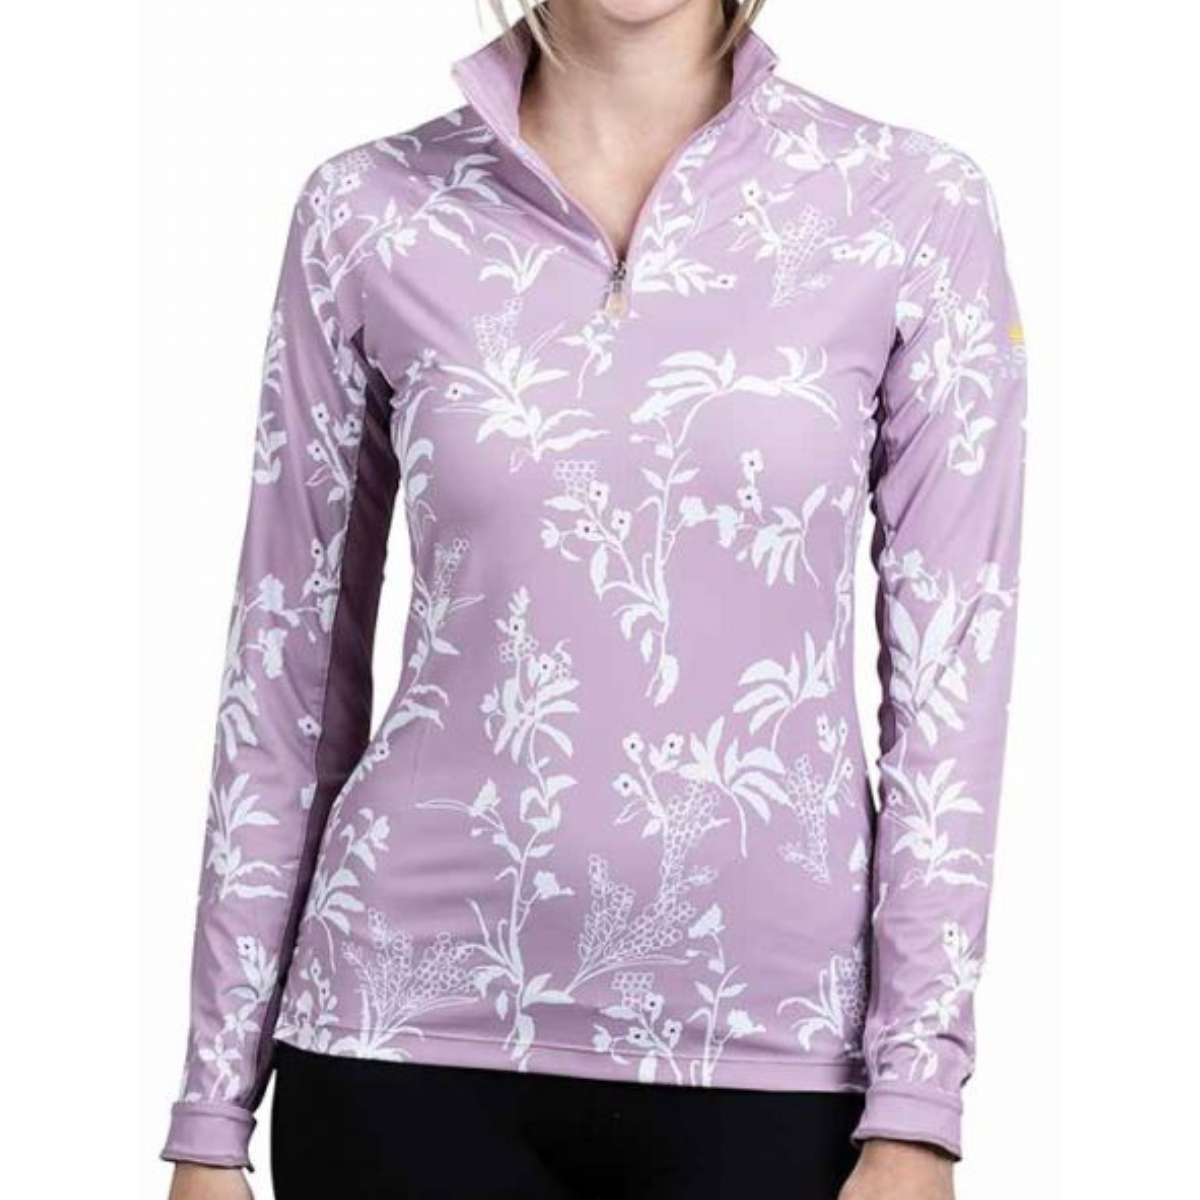 Kastel Long Sleeve 1/4 Zip in Lilac Floral